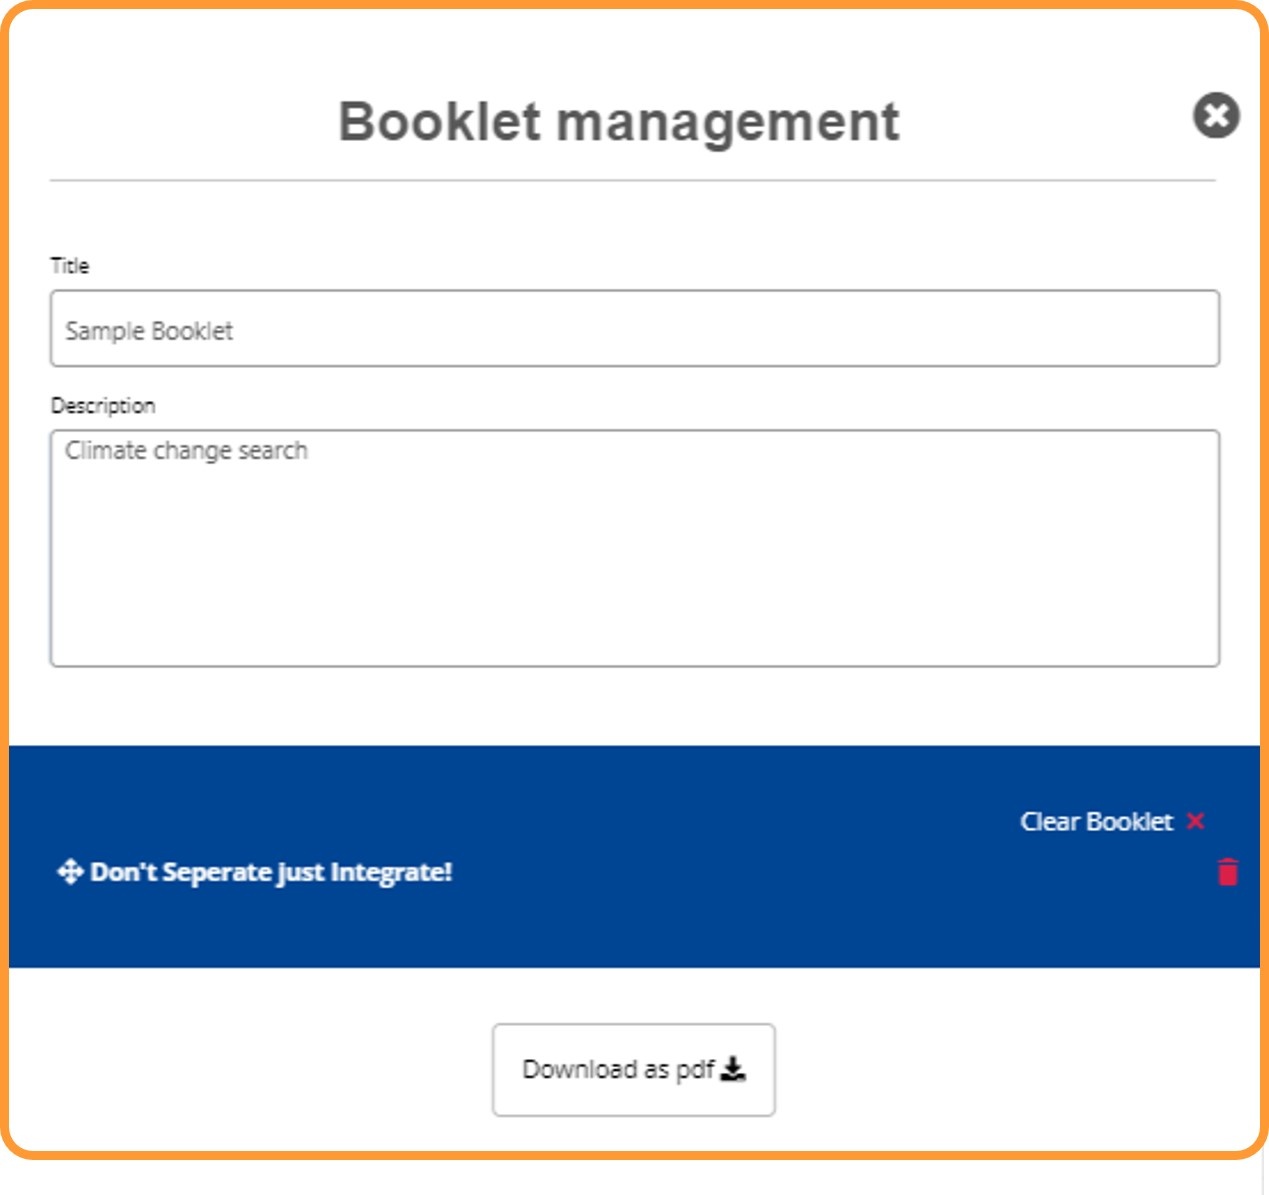 Booklet management details